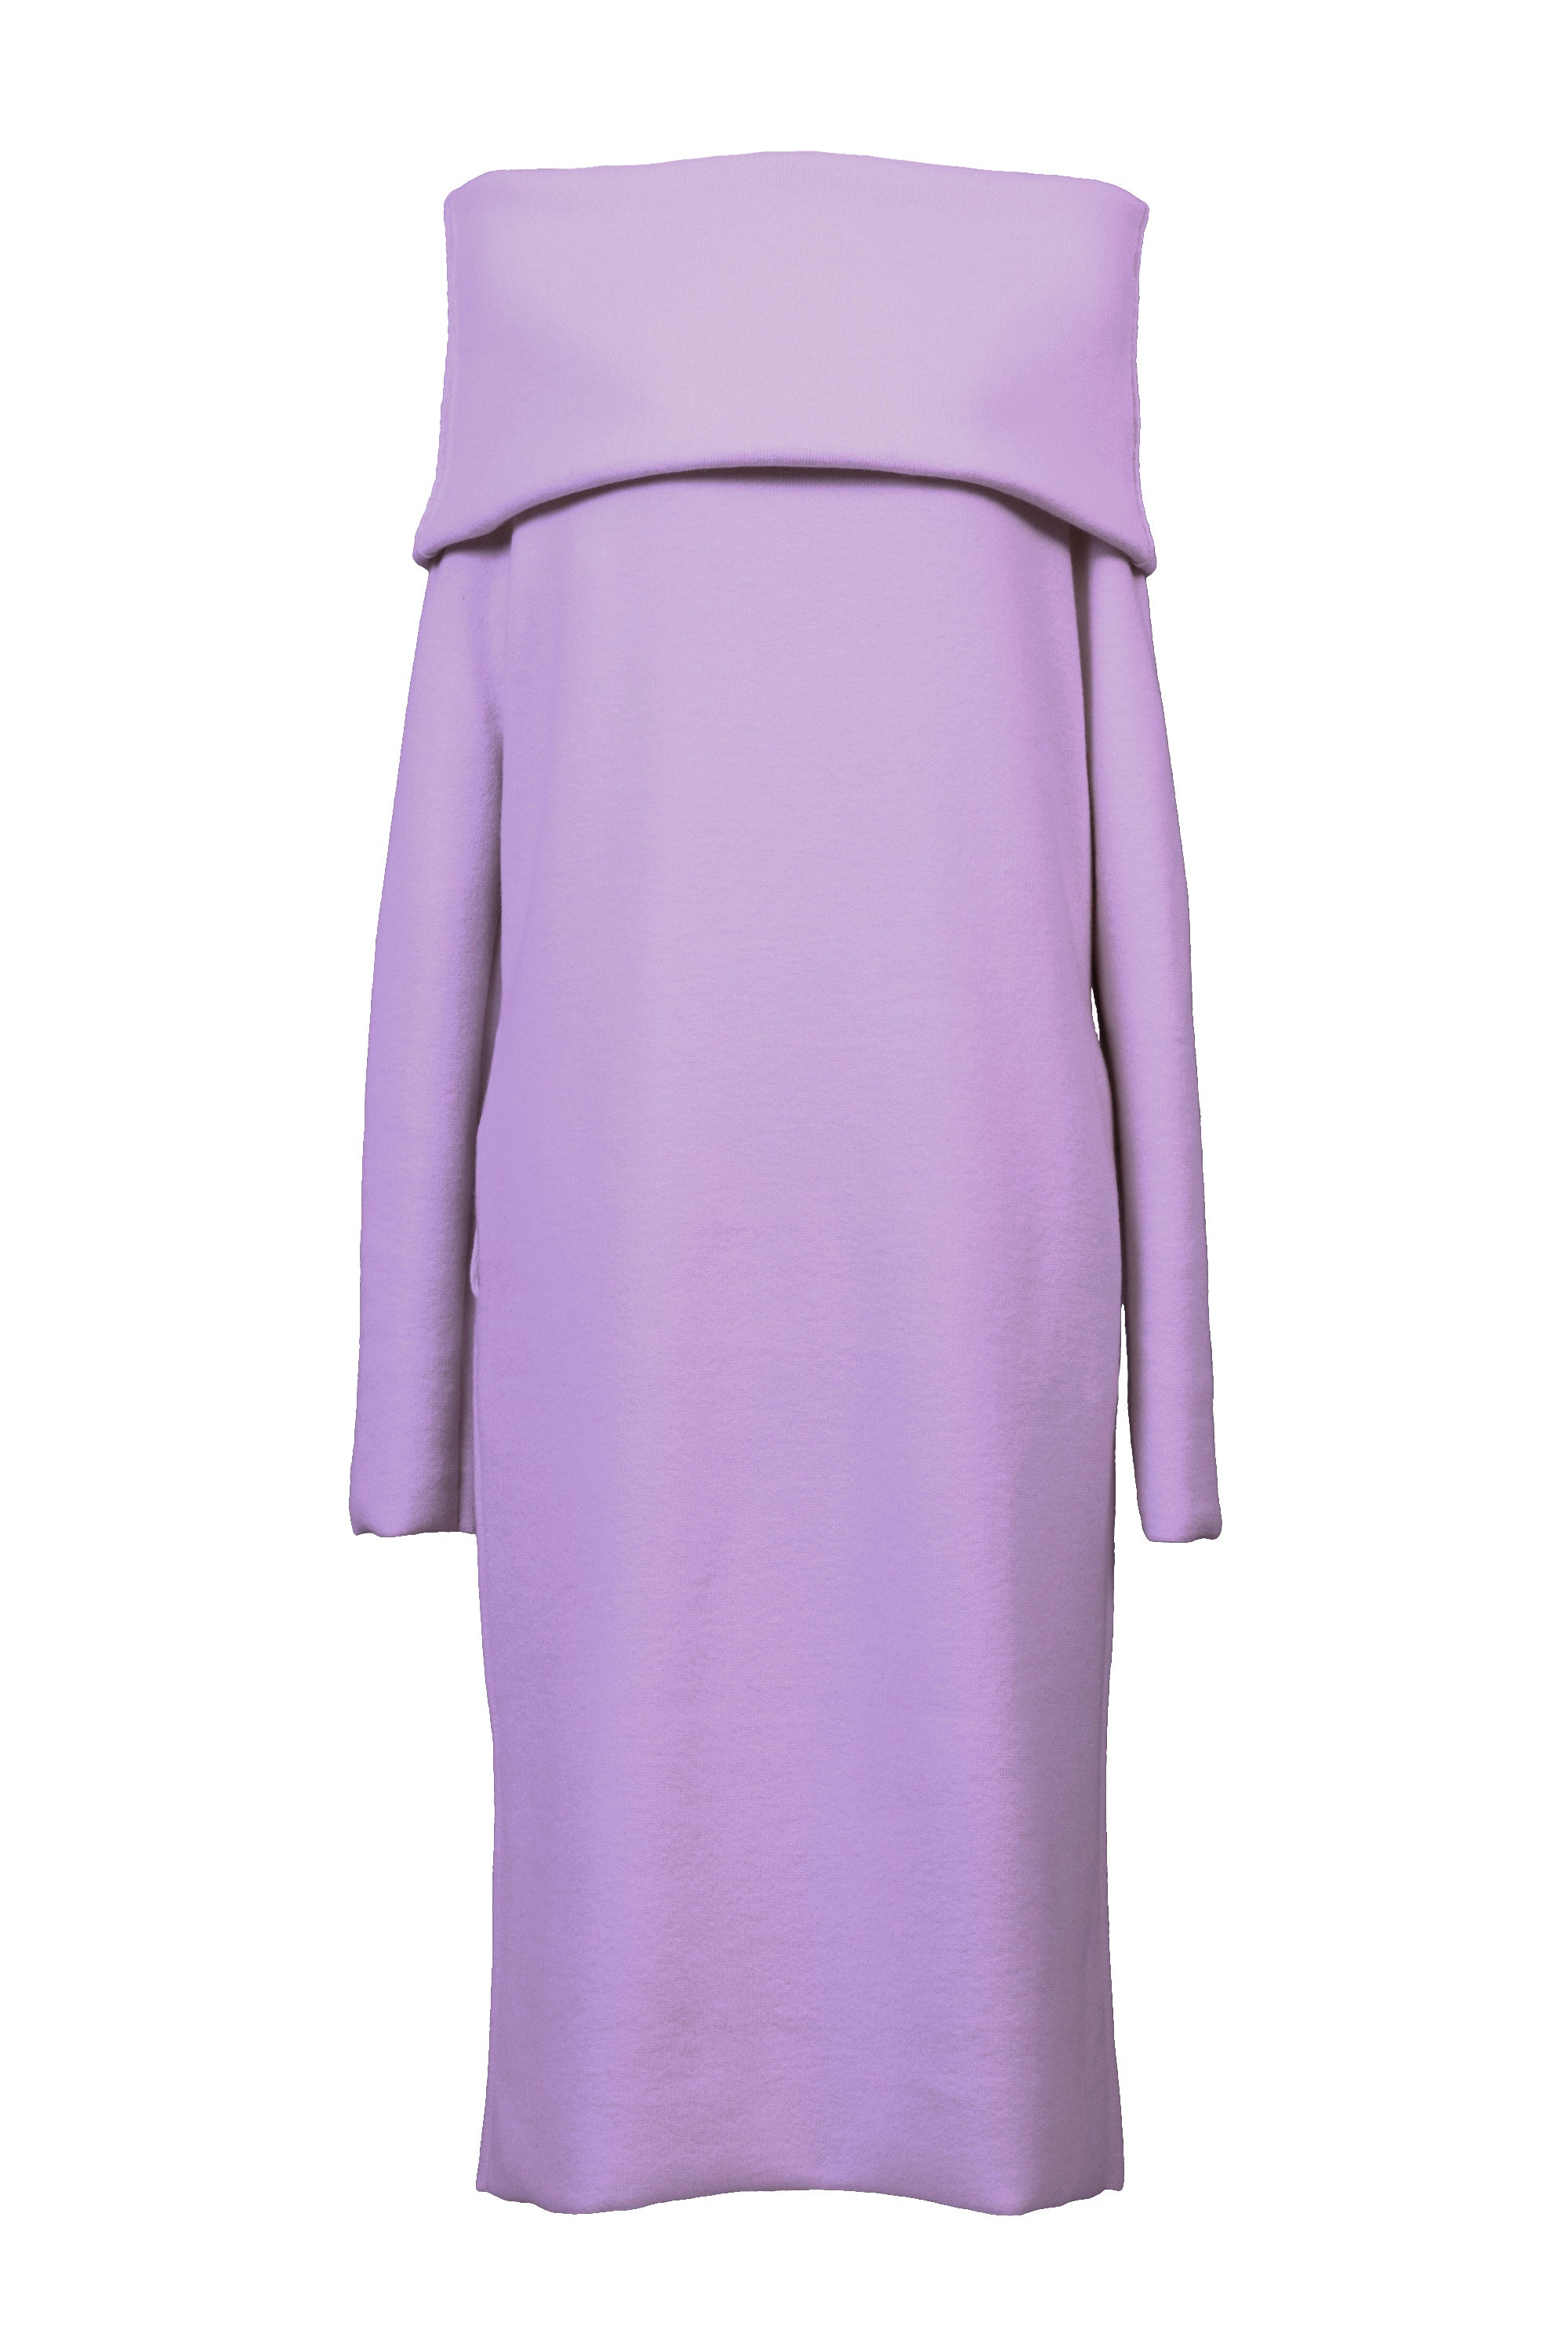 Cashmere Knit Off Shoulder Dress | Lilac – MYLAN ONLINE SHOP